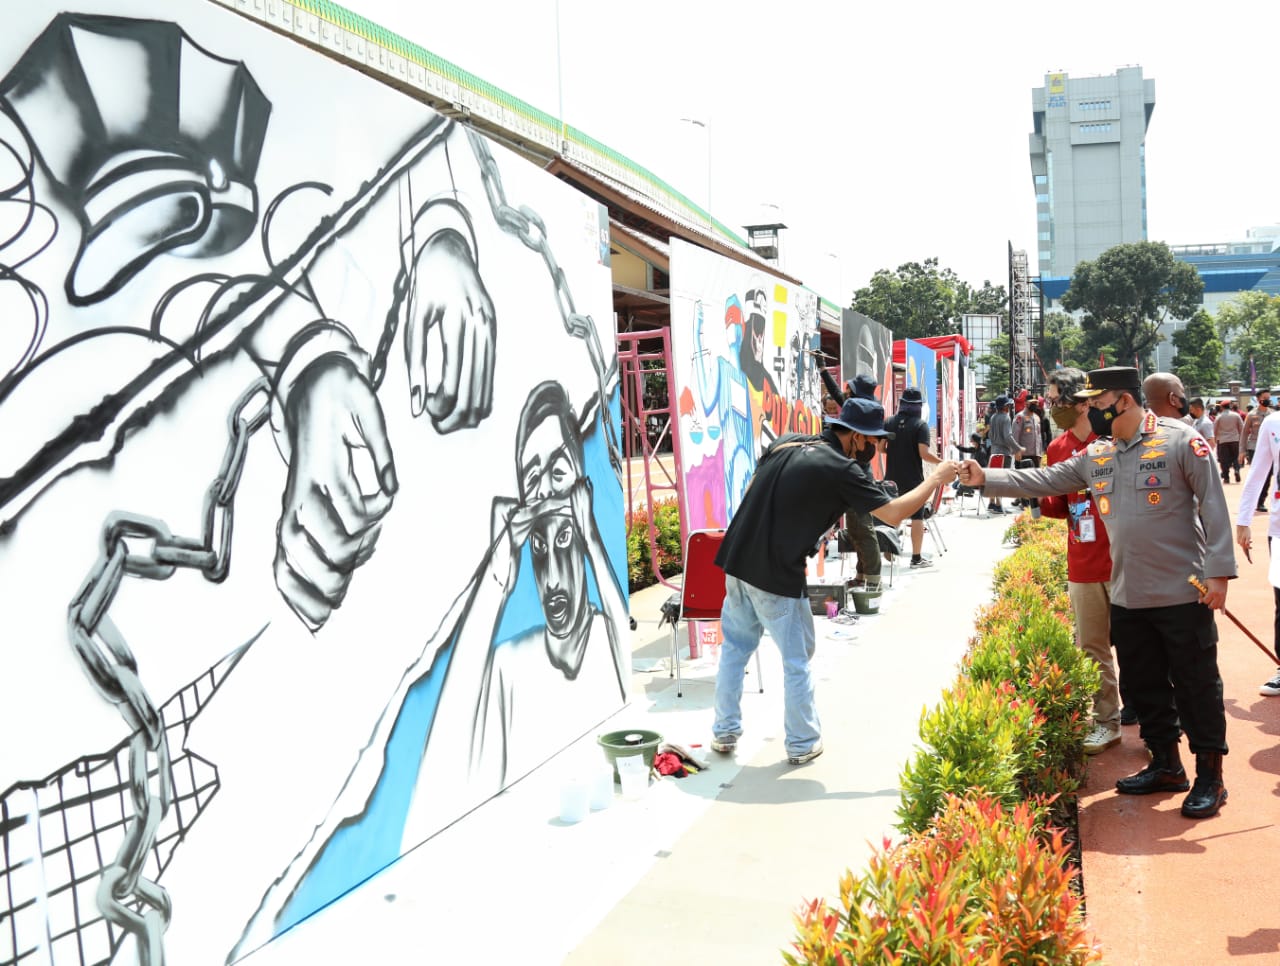 Buka Festival Mural Bhayangkara, Kapolri: Bukti Polri Menghormati Kebebasan Berekspresi